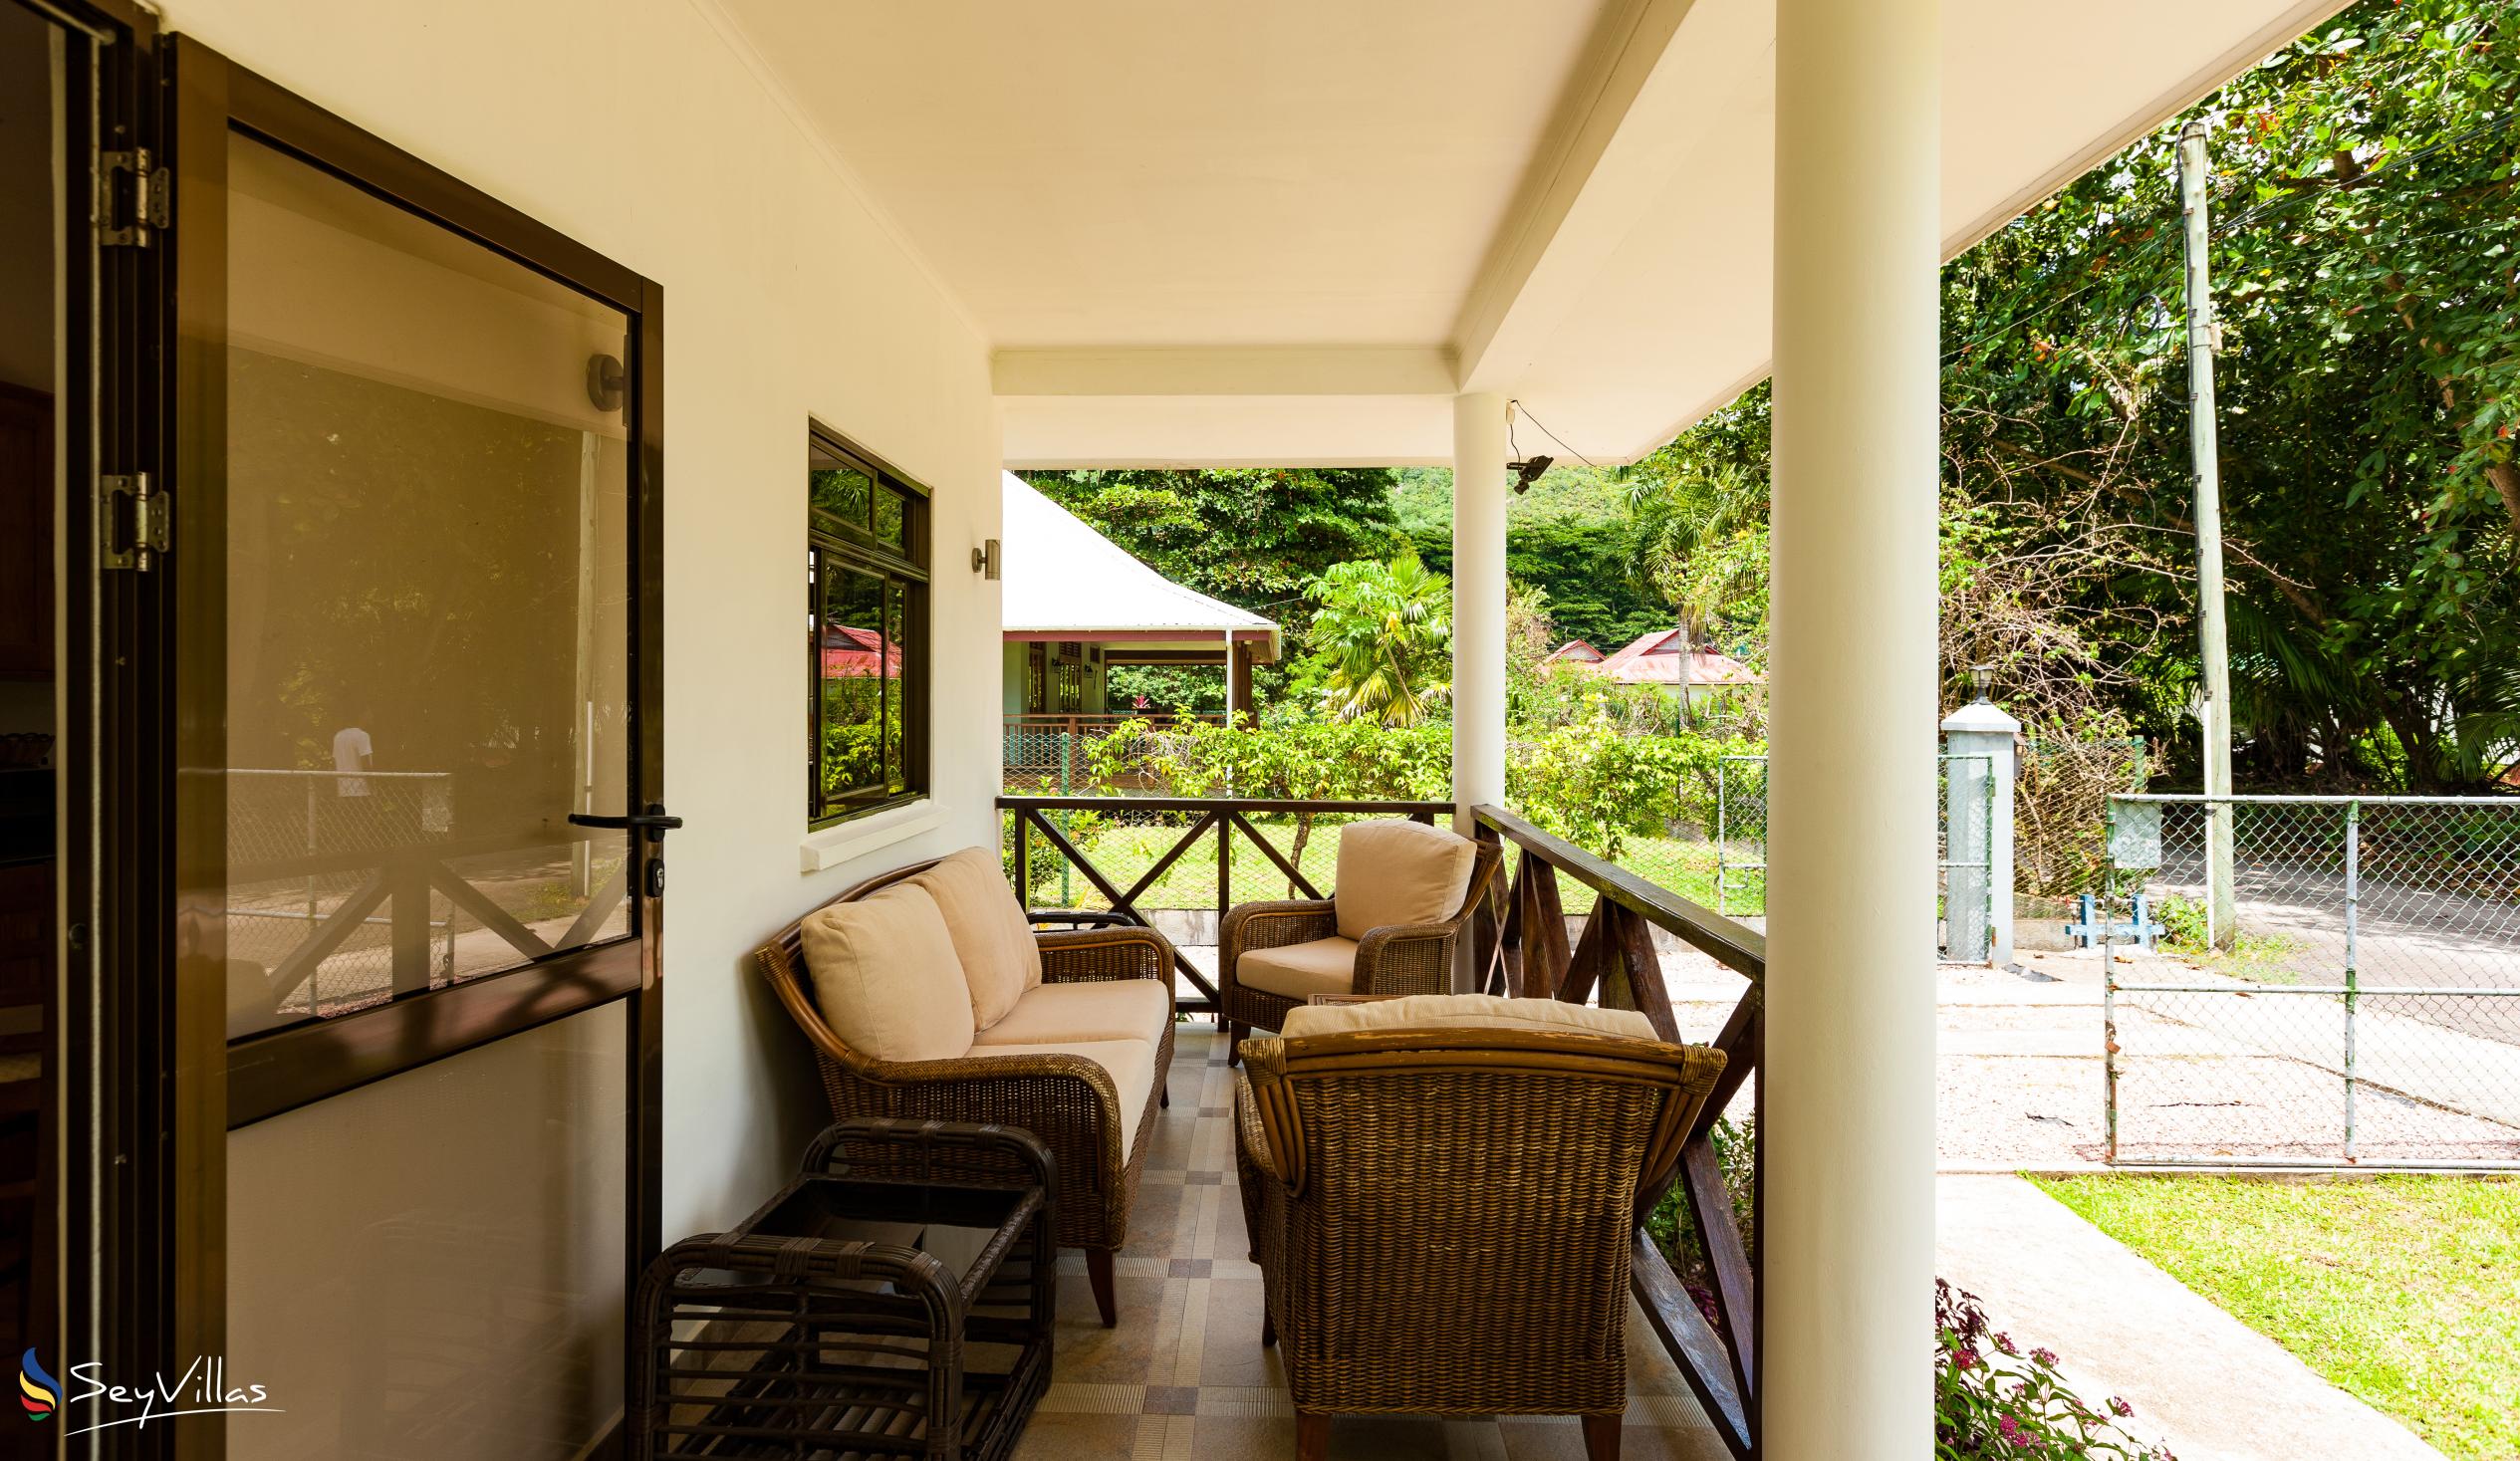 Foto 4: Villa Laure - Aussenbereich - Praslin (Seychellen)